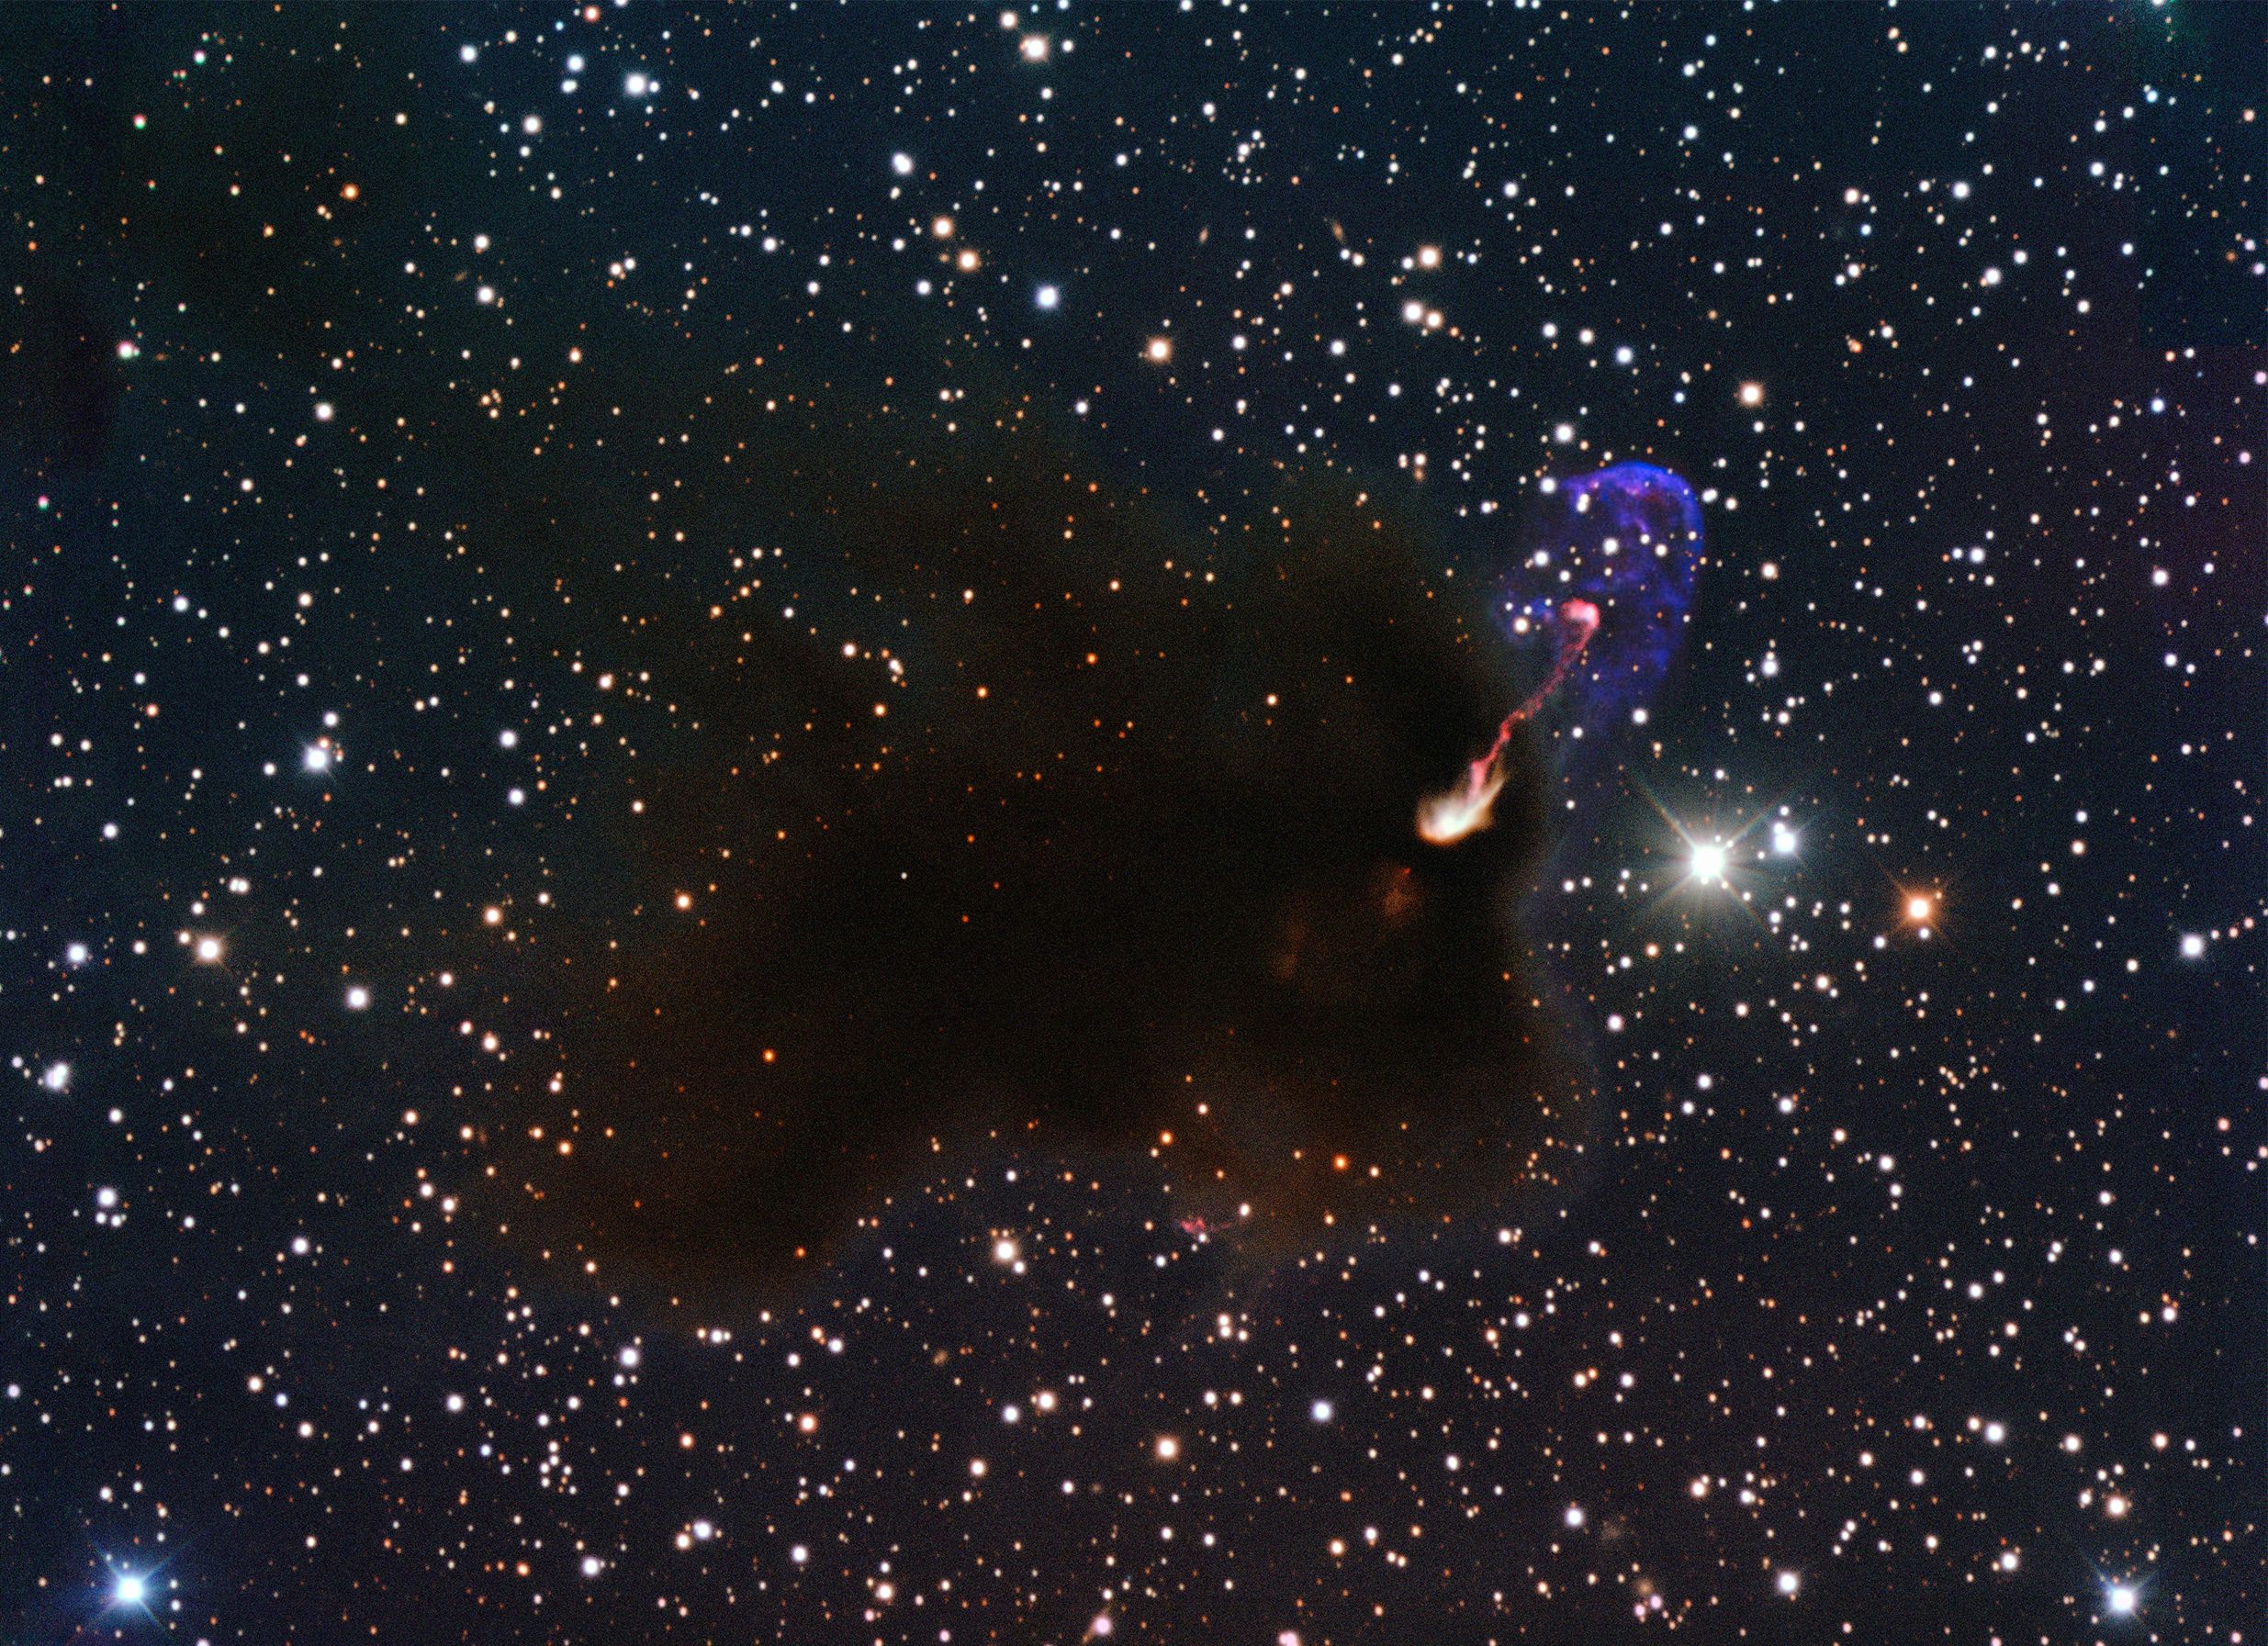 Na ilustracji: Zdjęcie obiektów Herbig-Haro 46/47 (HH 46/47) w zakresie optycznym wykonane przez 3,6m teleskop NTT w obserwatorium La Silla (Chile). Widać dżety wyłaniające się z ciemnych obłoków gwiazdotwórczych. Zdjęcie zostało obrócone o 90 stopni zgodnie z kierunkiem wskazówek zegara, aby umożliwić porównanie HH 46/47 w zakresie optycznym ze zdjęciem w podczerwieni z Teleskopu Webba. Źródło: ESO/Bo Reipurth